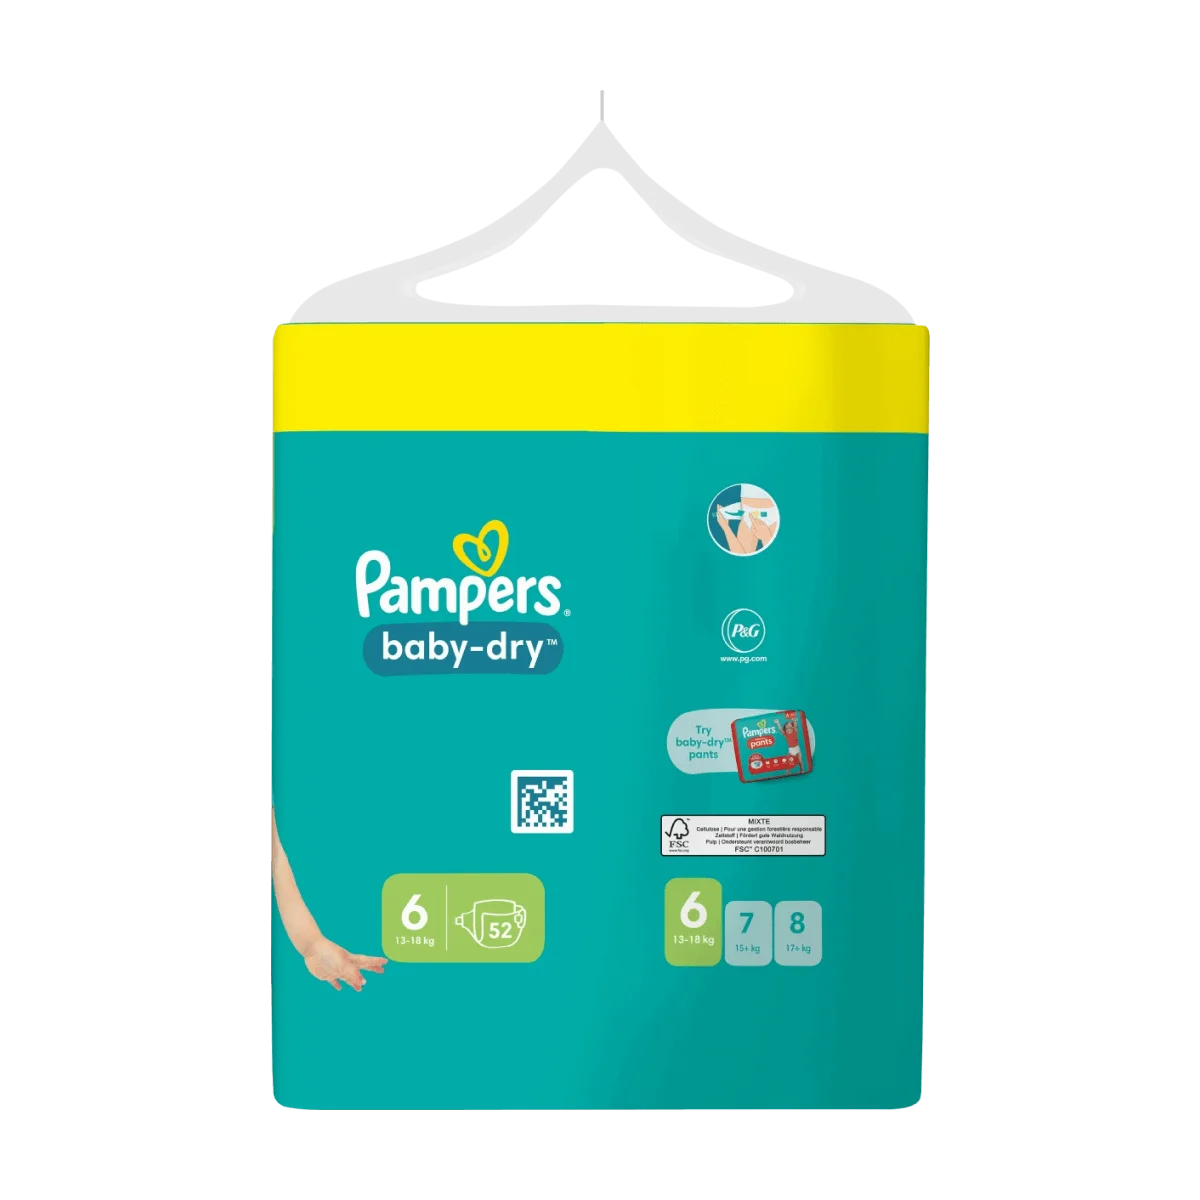 Pampers Baby Dry Big Pack Größe 6 XL 13-18kg, 52 Stk